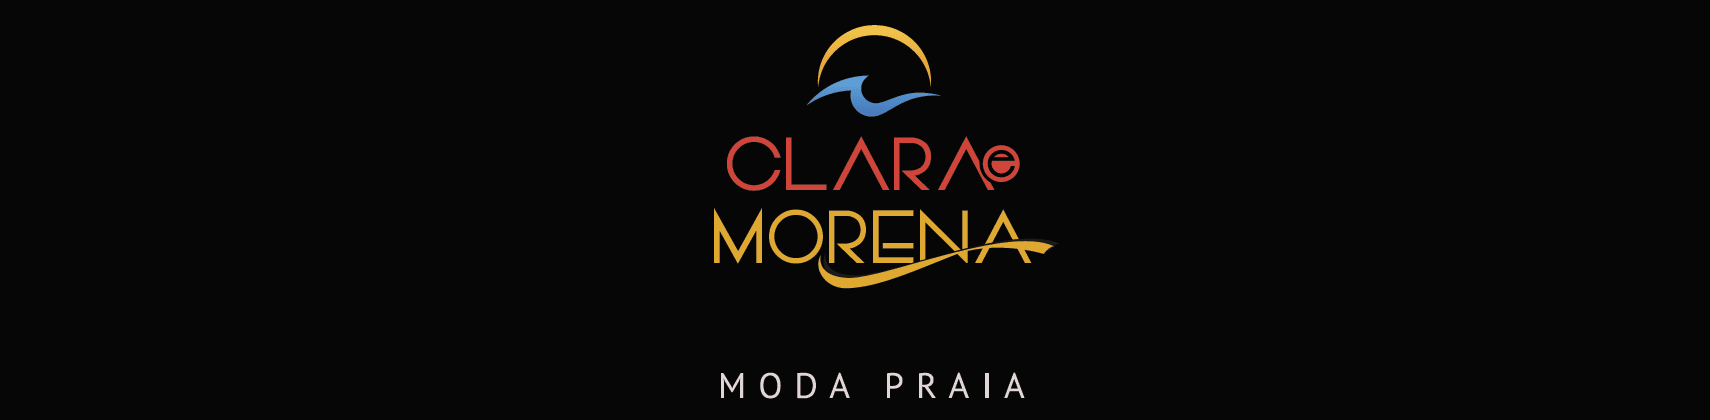 Clara e Morena Moda Praia